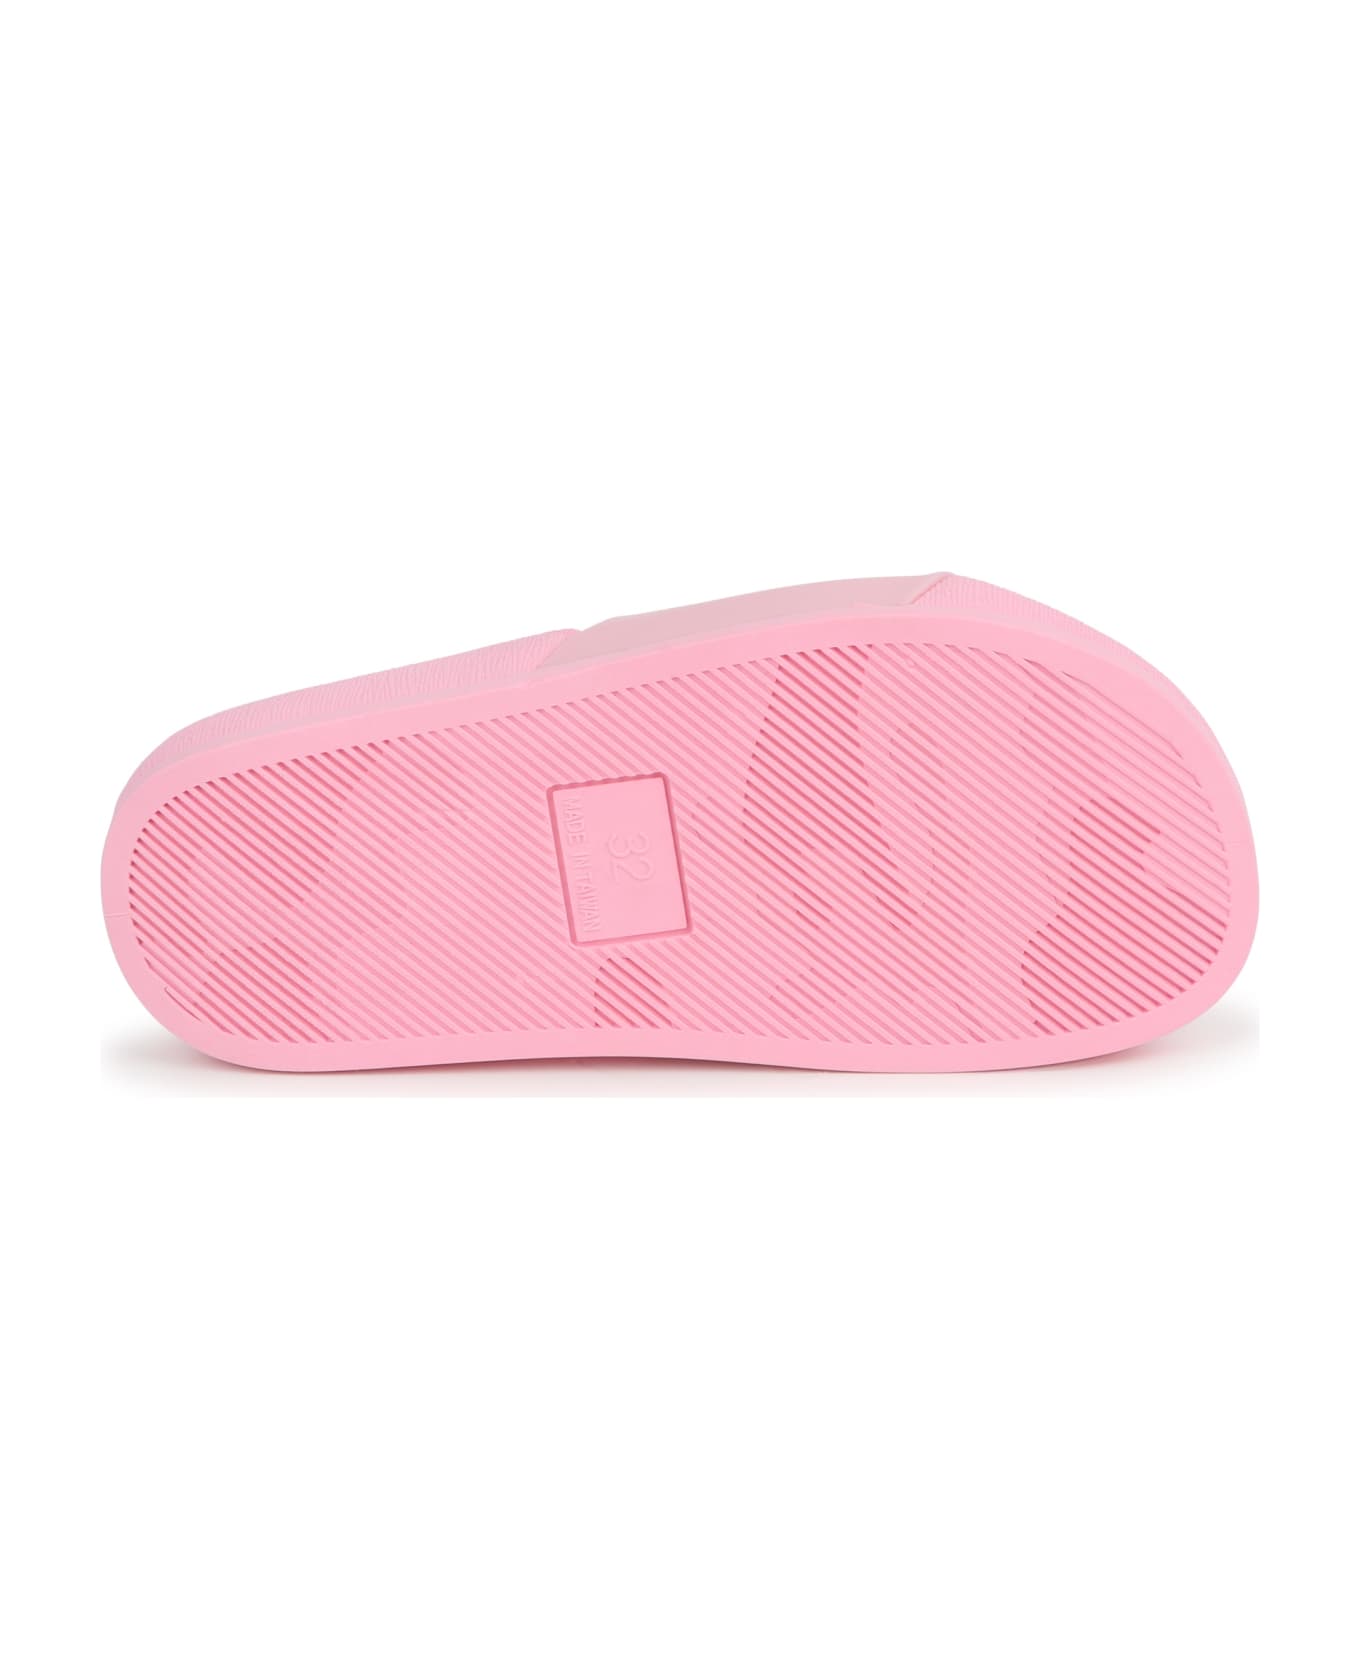 Marc Jacobs Ciabatte Con Logo - Pink シューズ